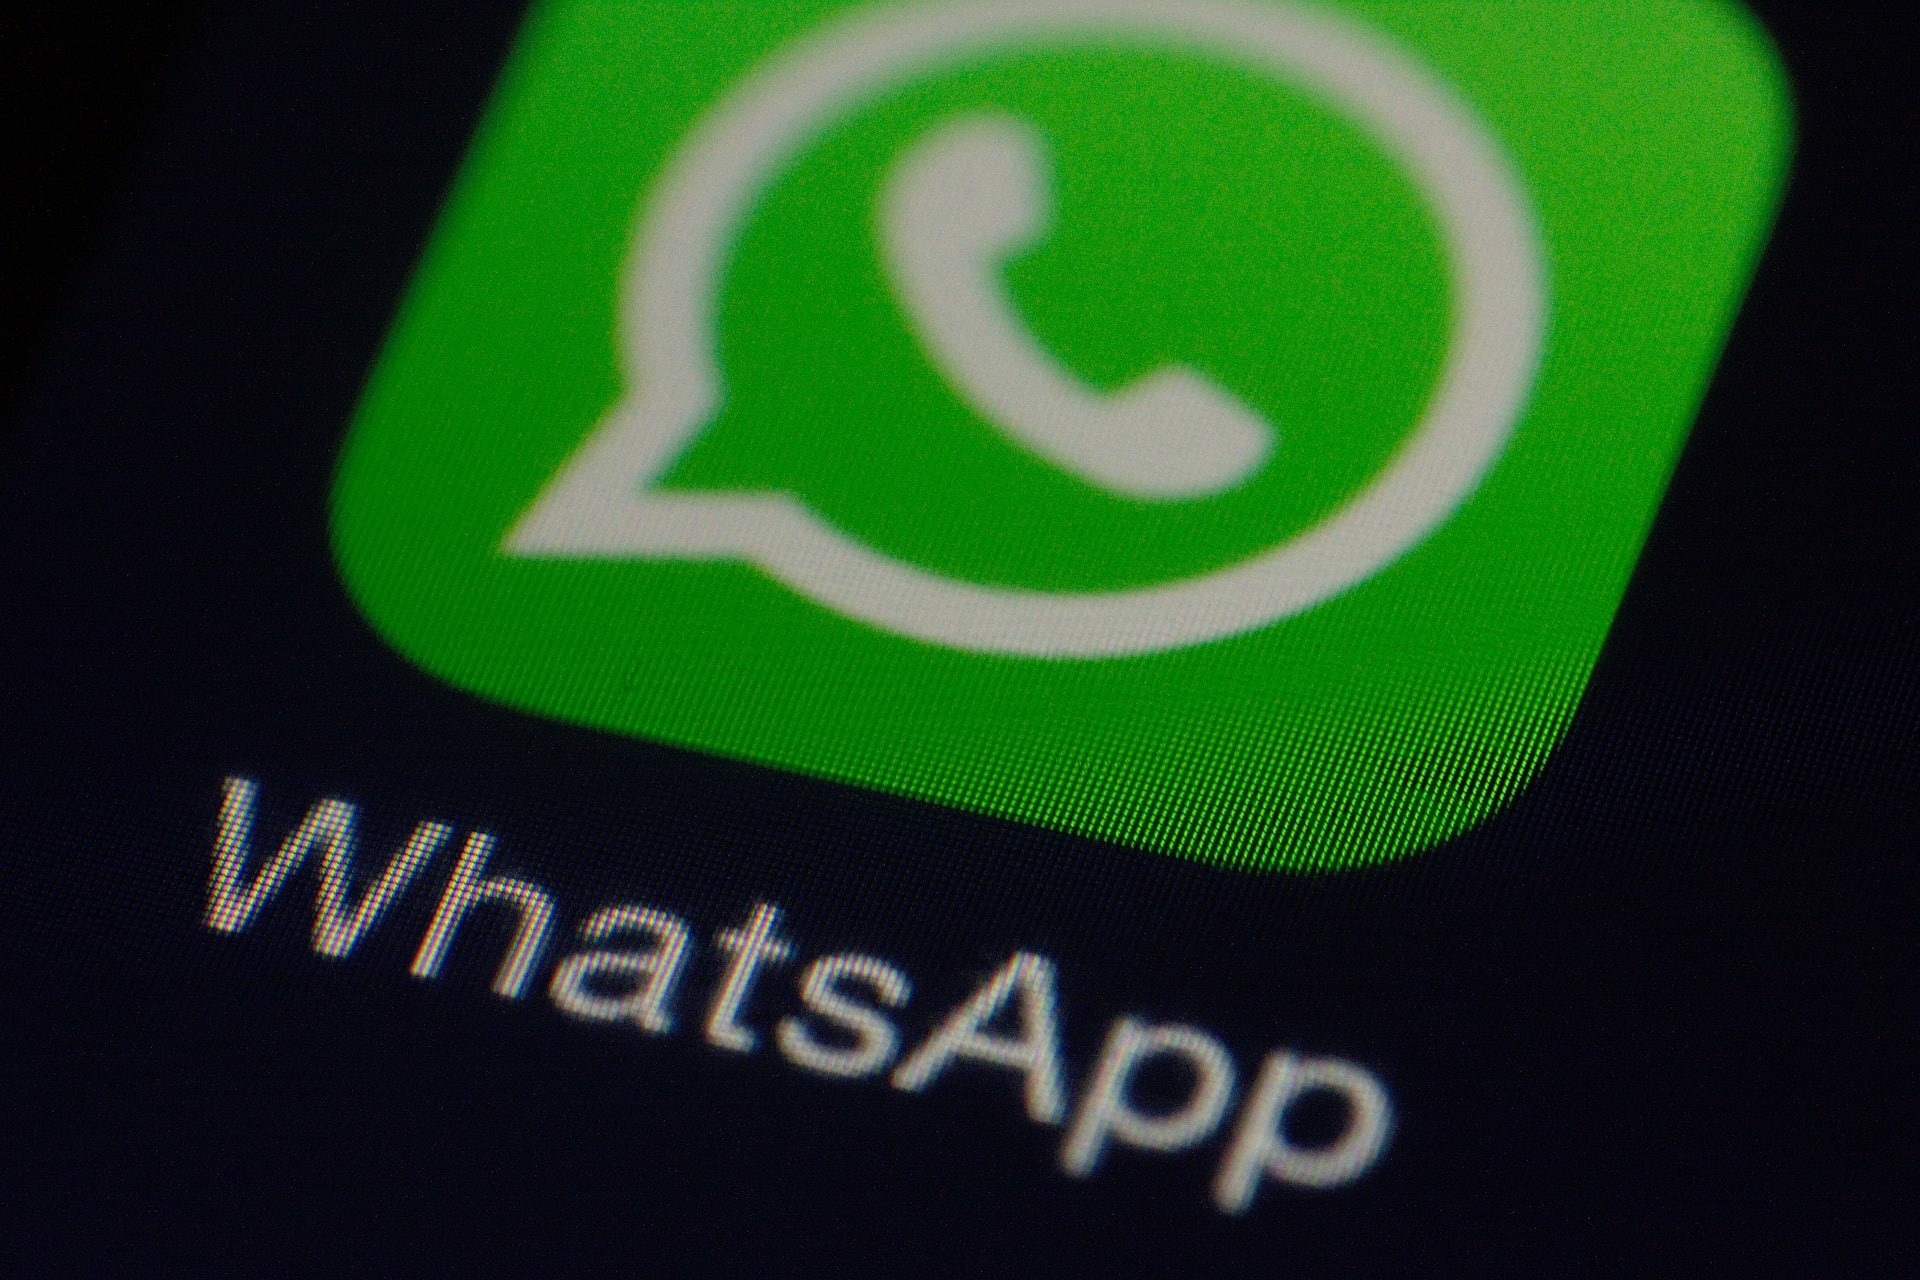 Cea mai așteptată funcție lansată de WhatsApp. Utilizatorii vor putea modifica mesajele după ce le-au trimis/ Pixabay